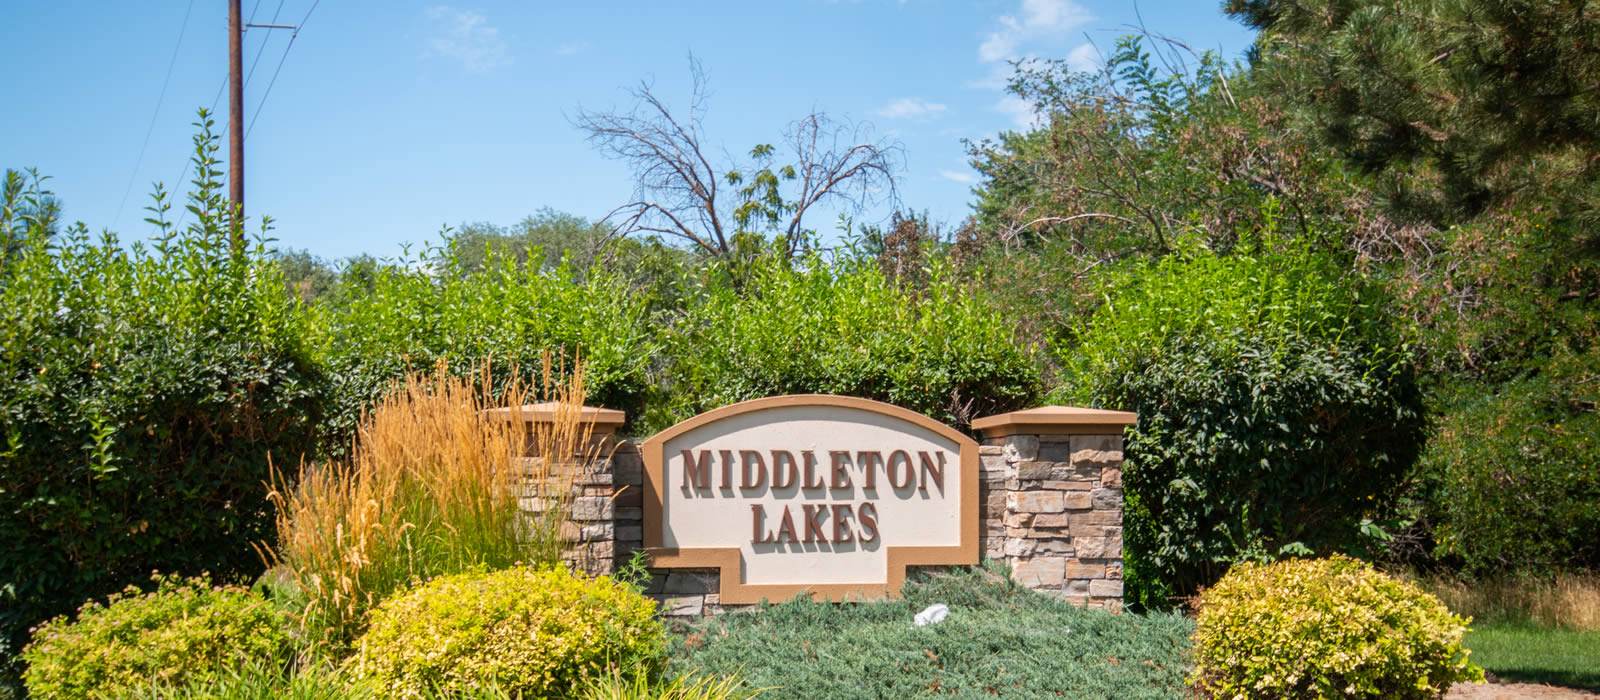 Middleton Lakes Subdivision